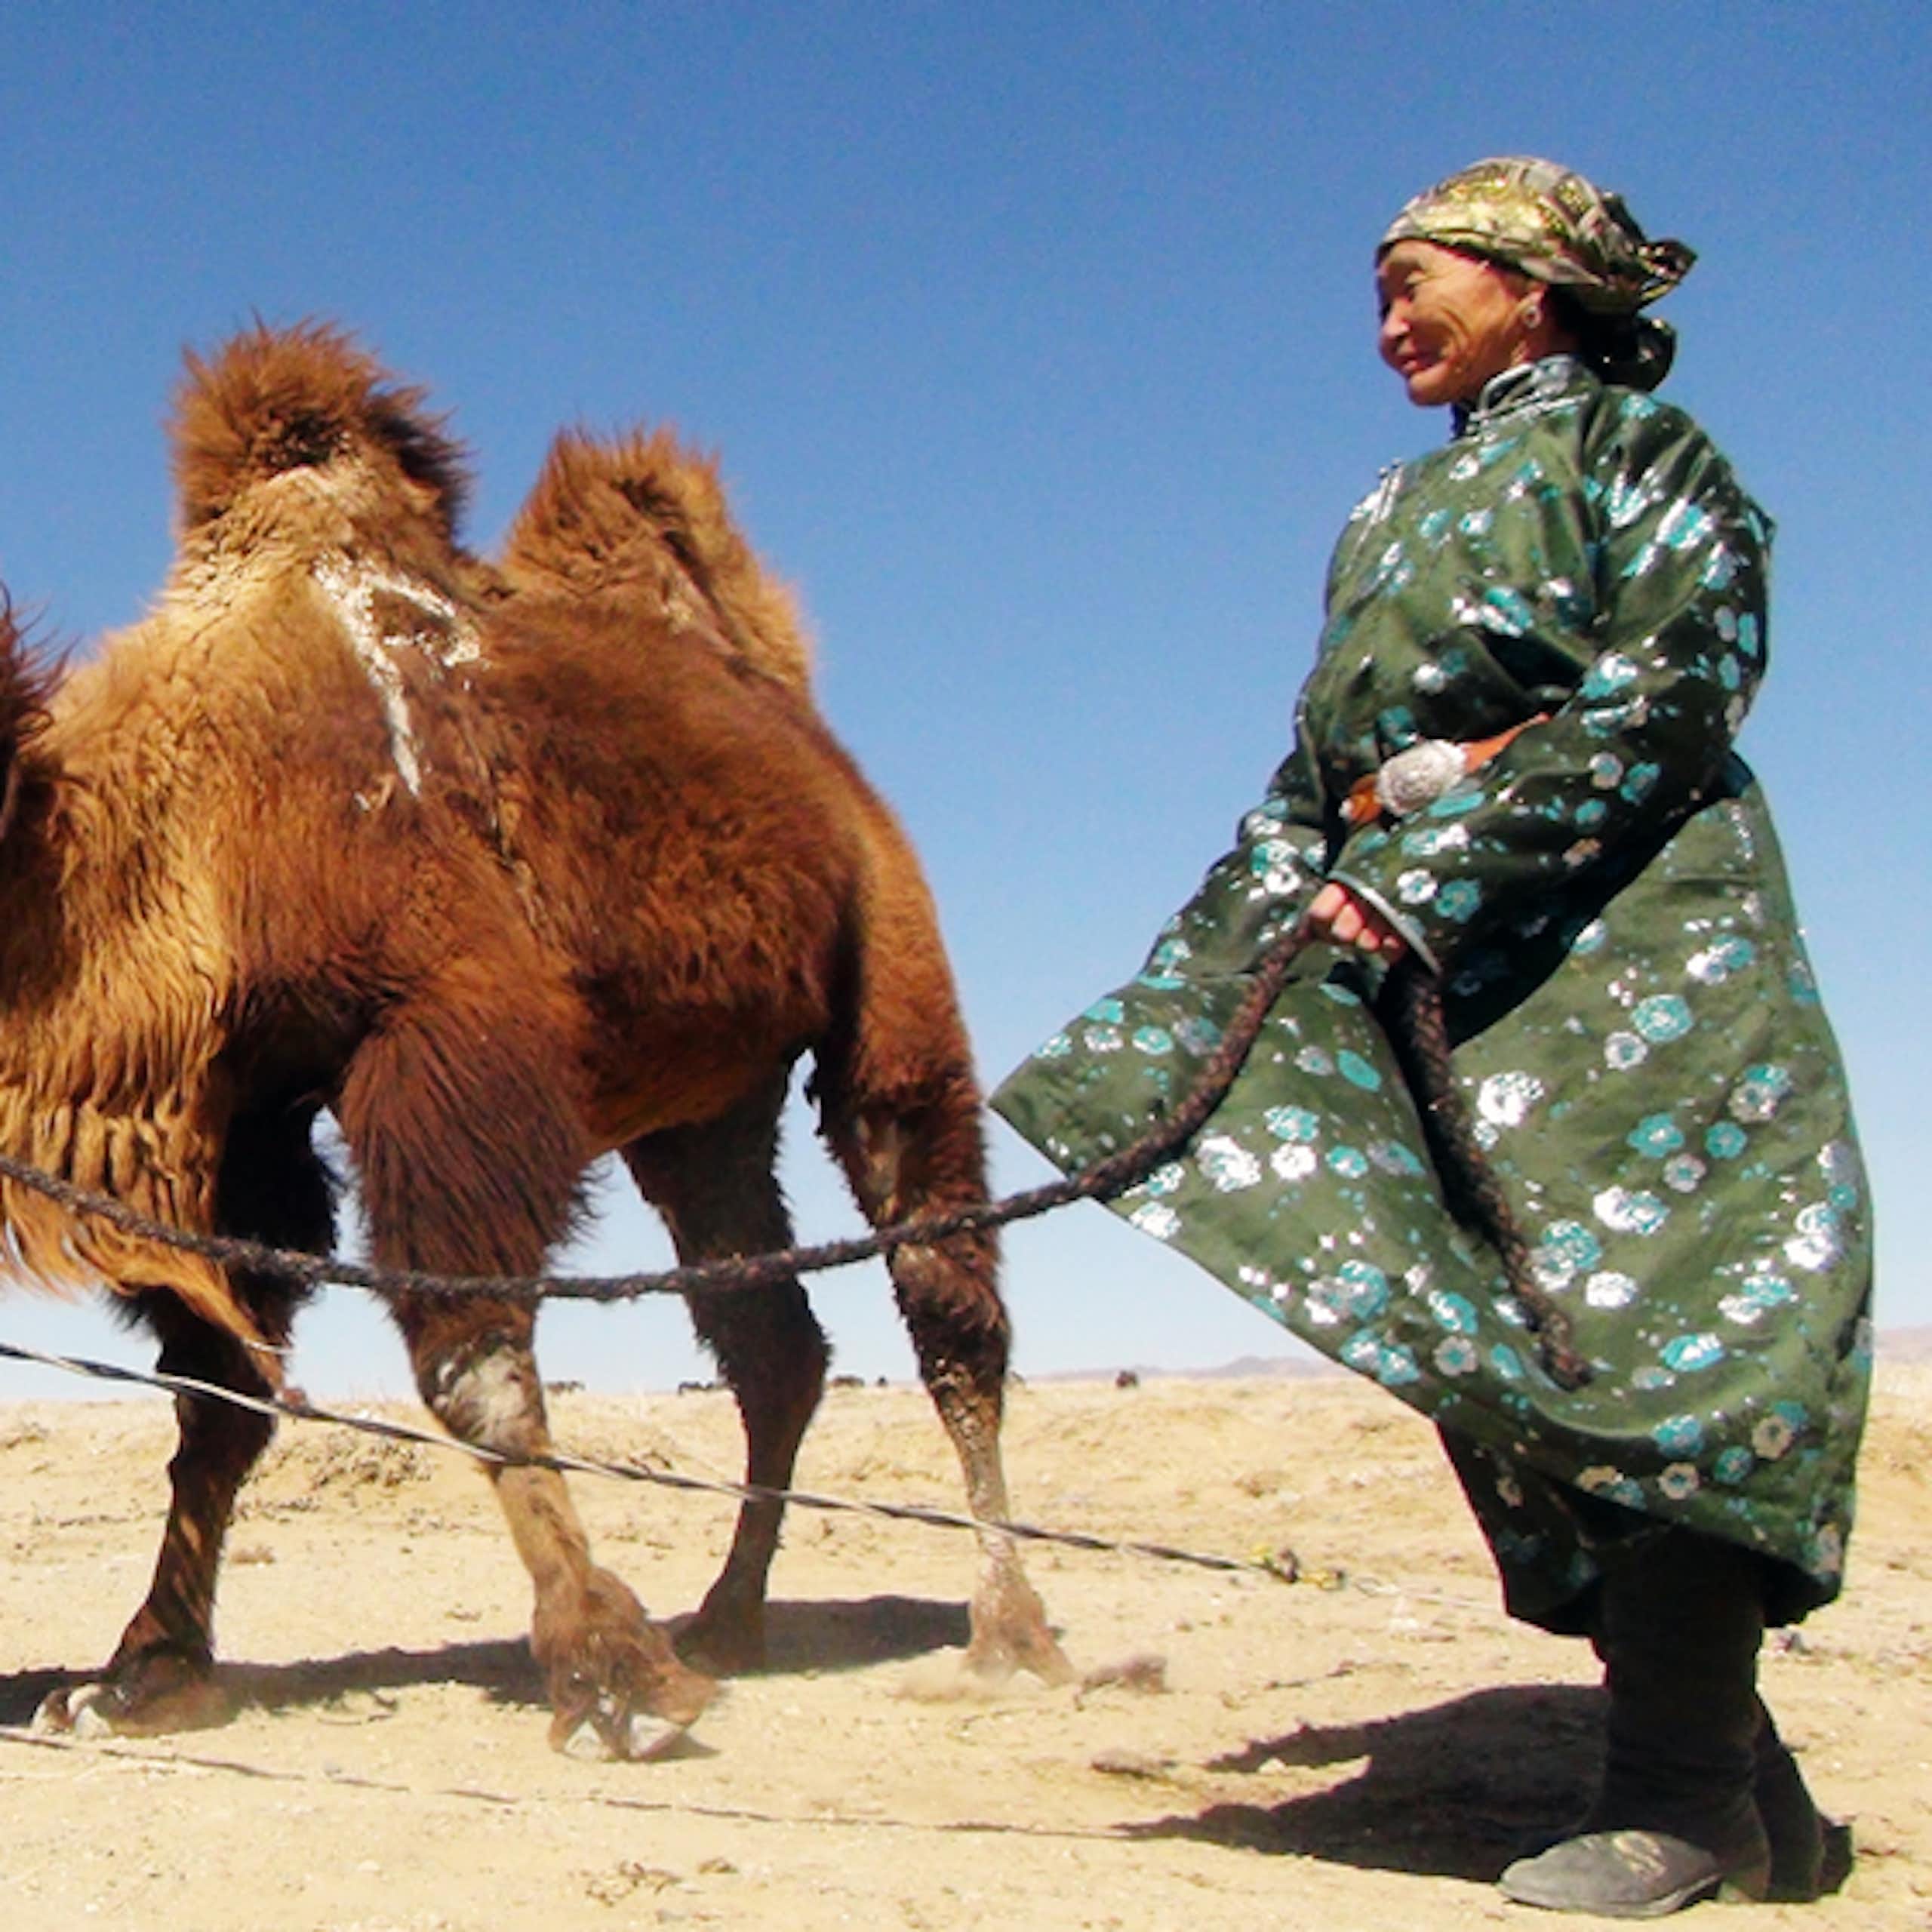 Pastora nómada de Mongolia llevando a sus camellos.